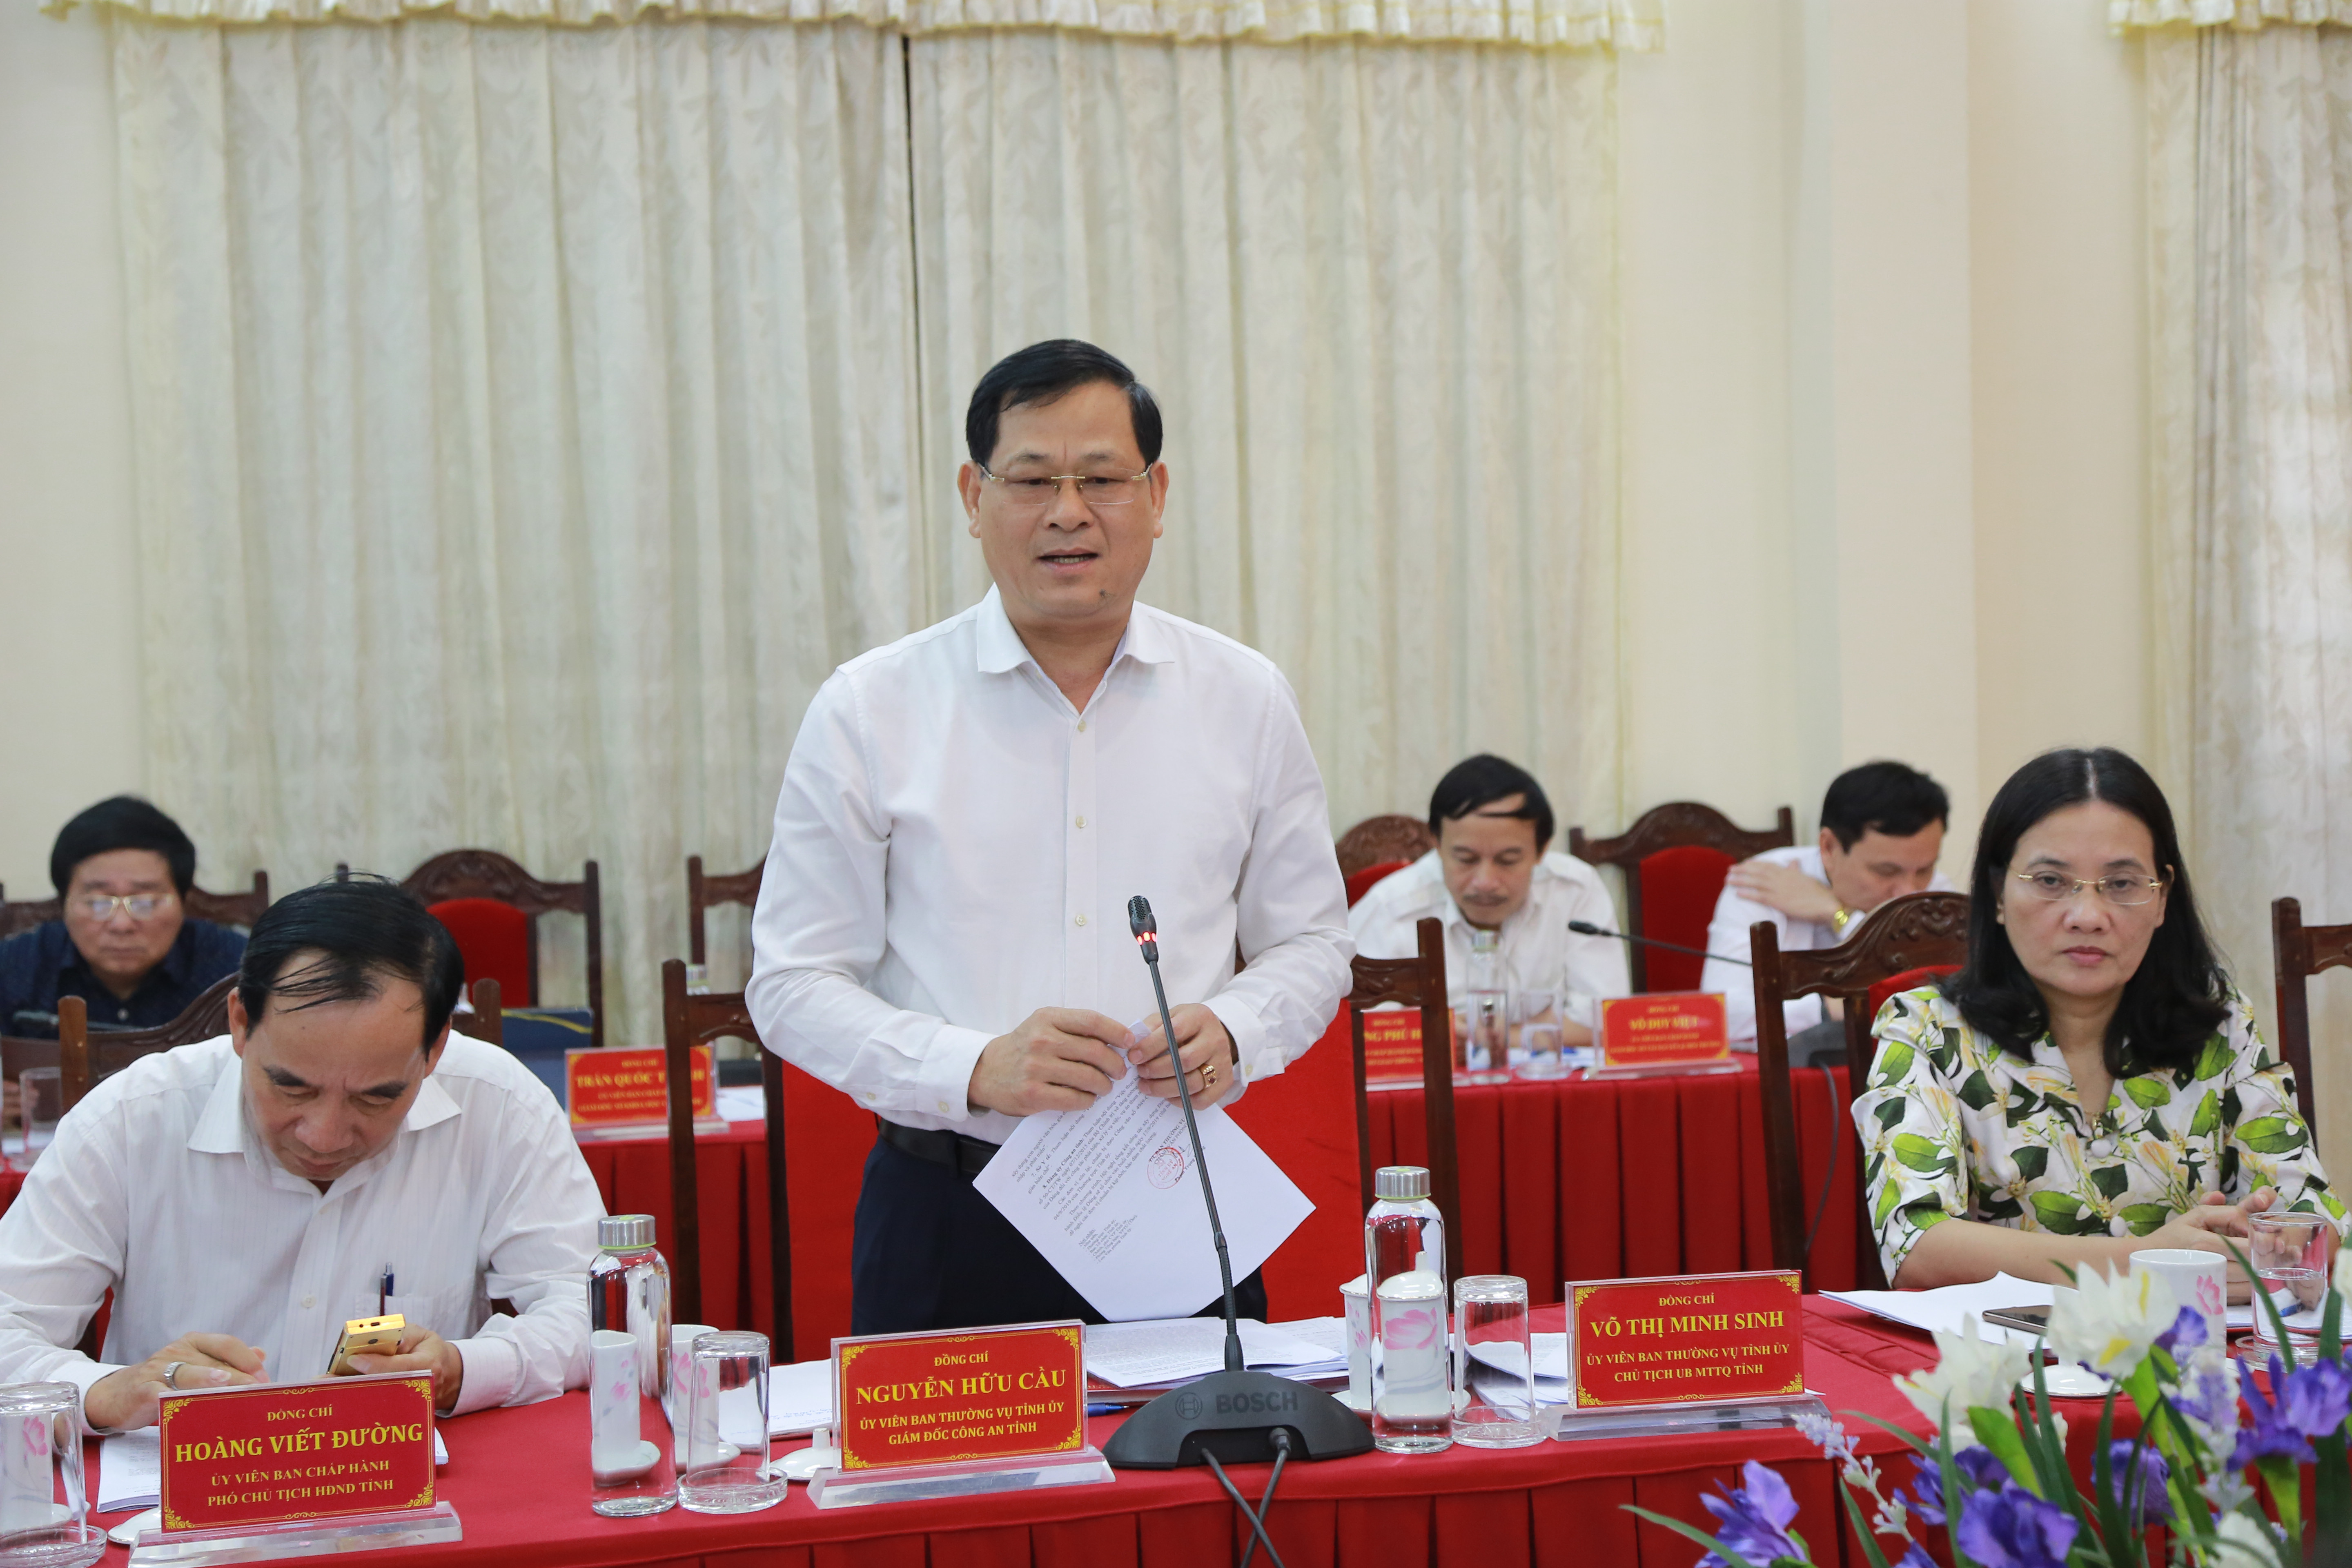 Thiếu tướng Nguyễn Hữu Cầu - Giám đốc Công an tỉnh phát biểu tại hội nghị. Ảnh Đào Tuấn